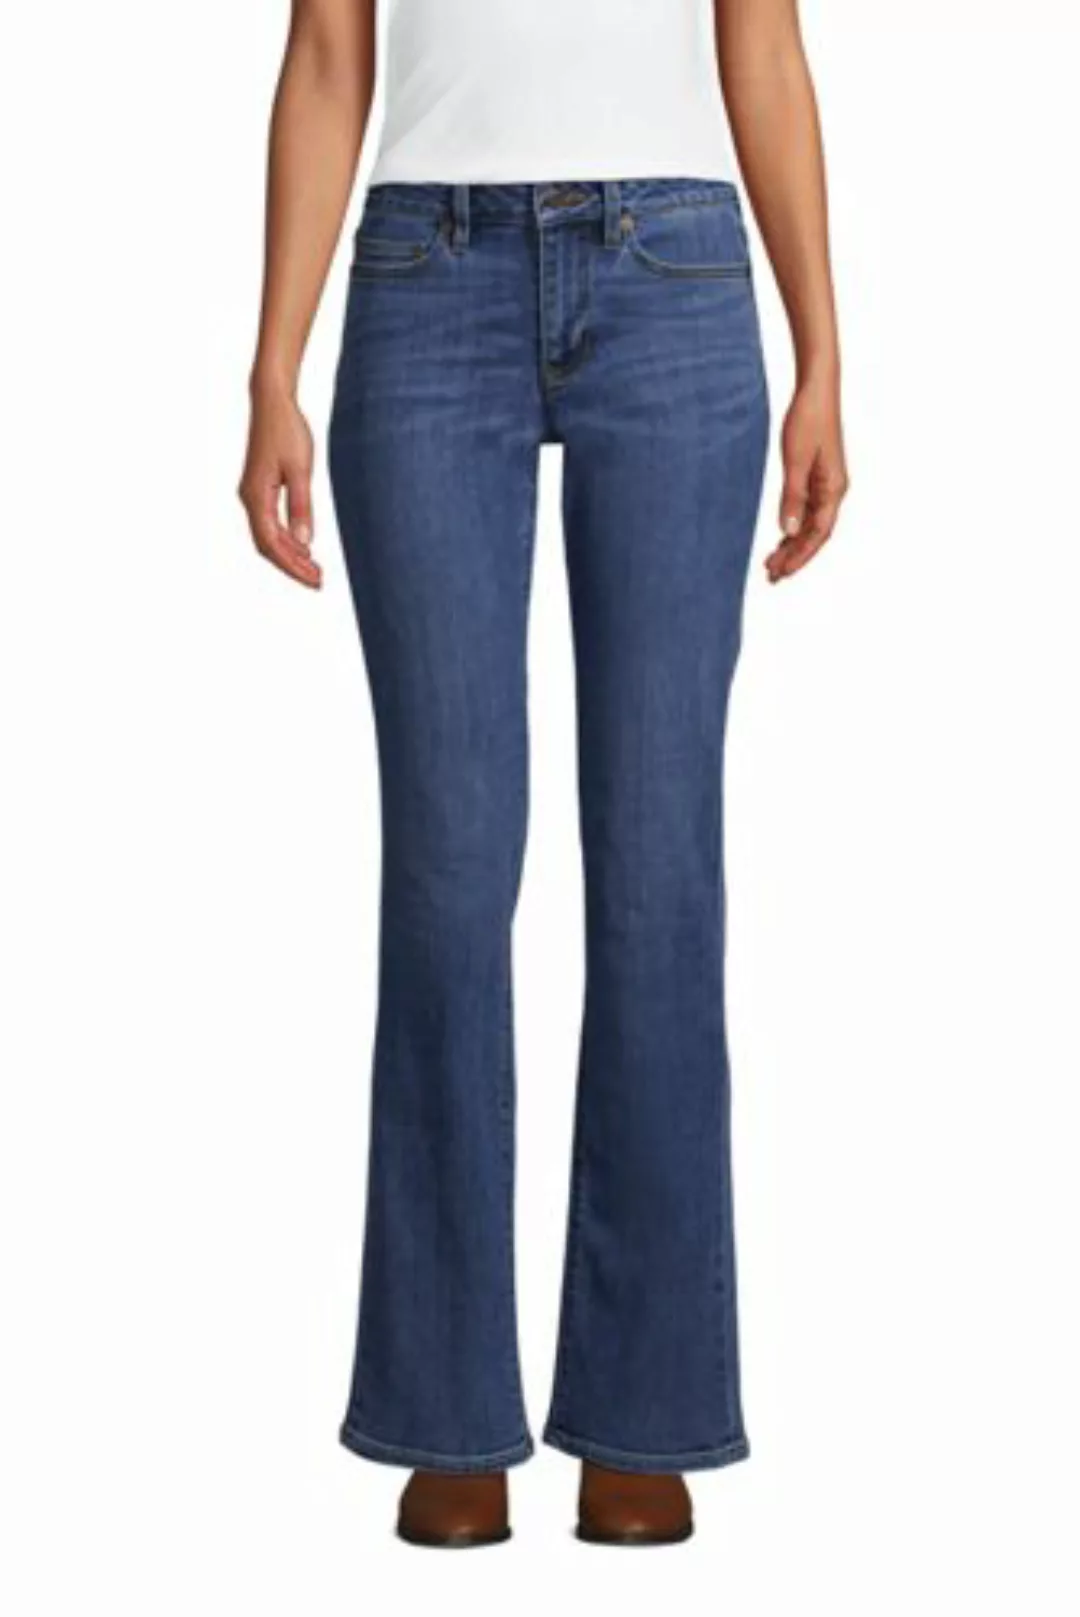 Bootcut Öko-Jeans Mid Waist, Damen, Größe: 36 30 Normal, Blau, Elasthan, by günstig online kaufen